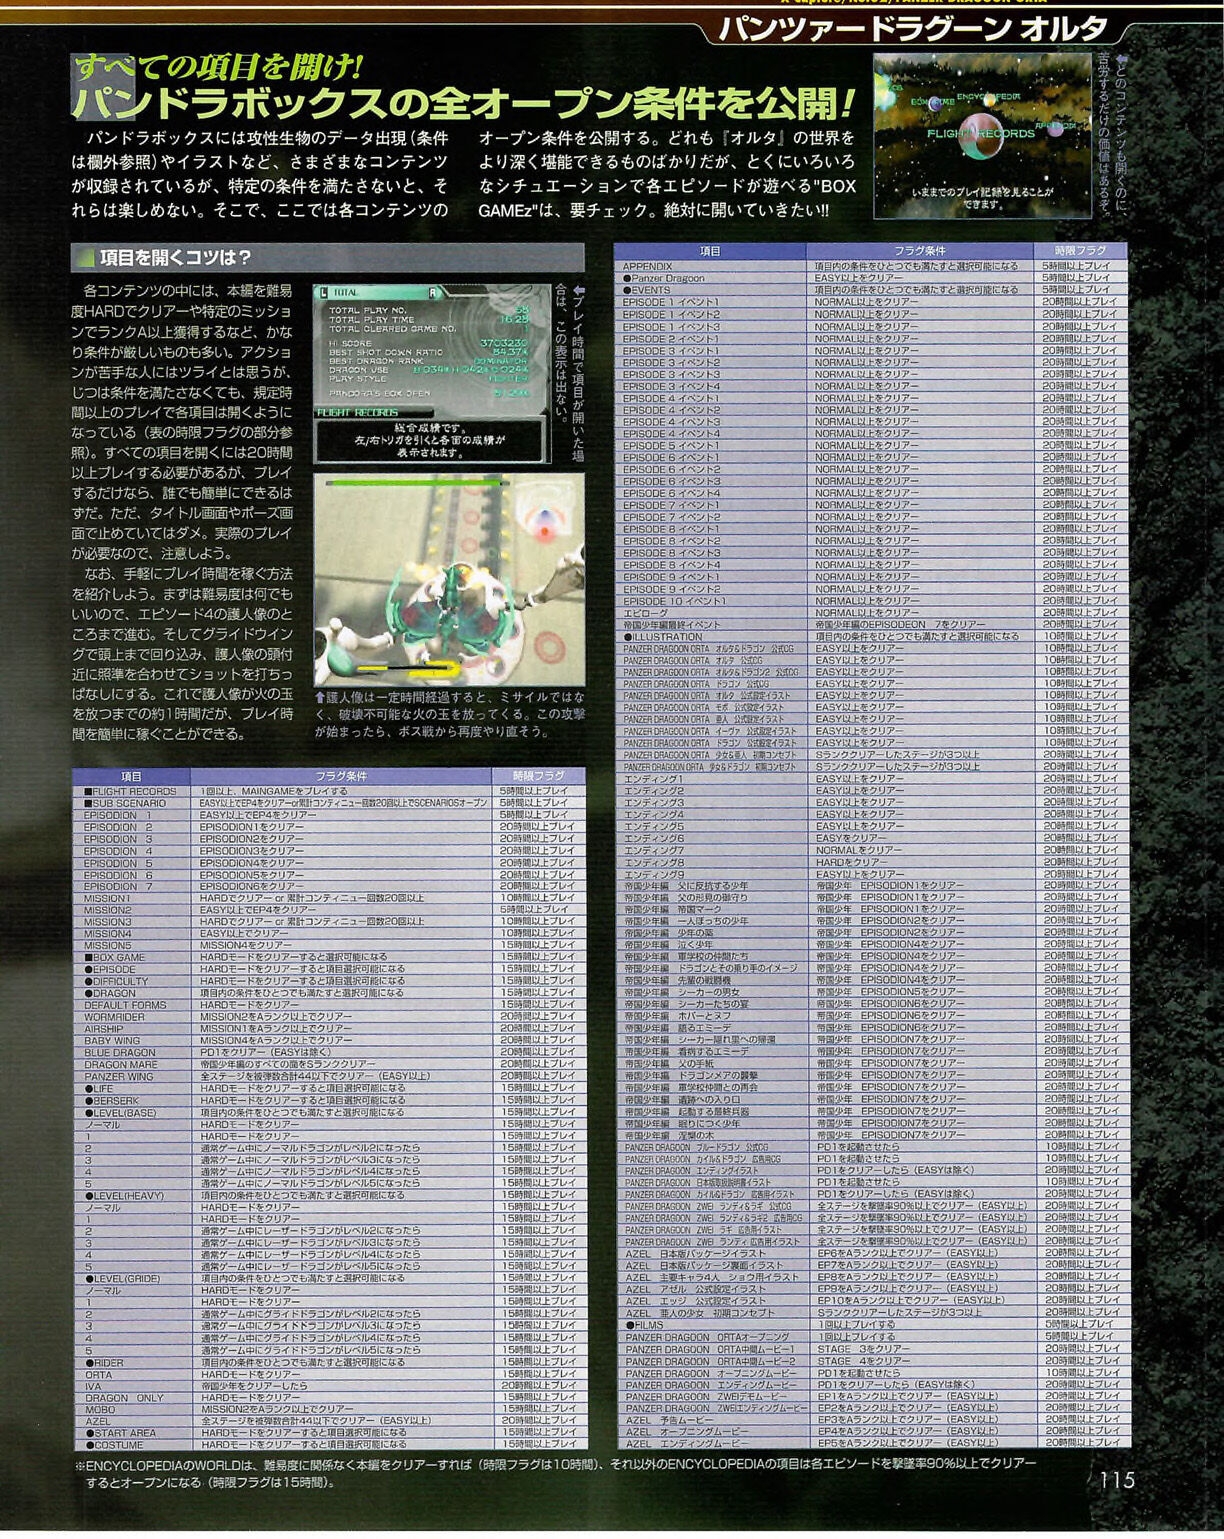 Famitsu_Xbox_2003-04_jp2 114